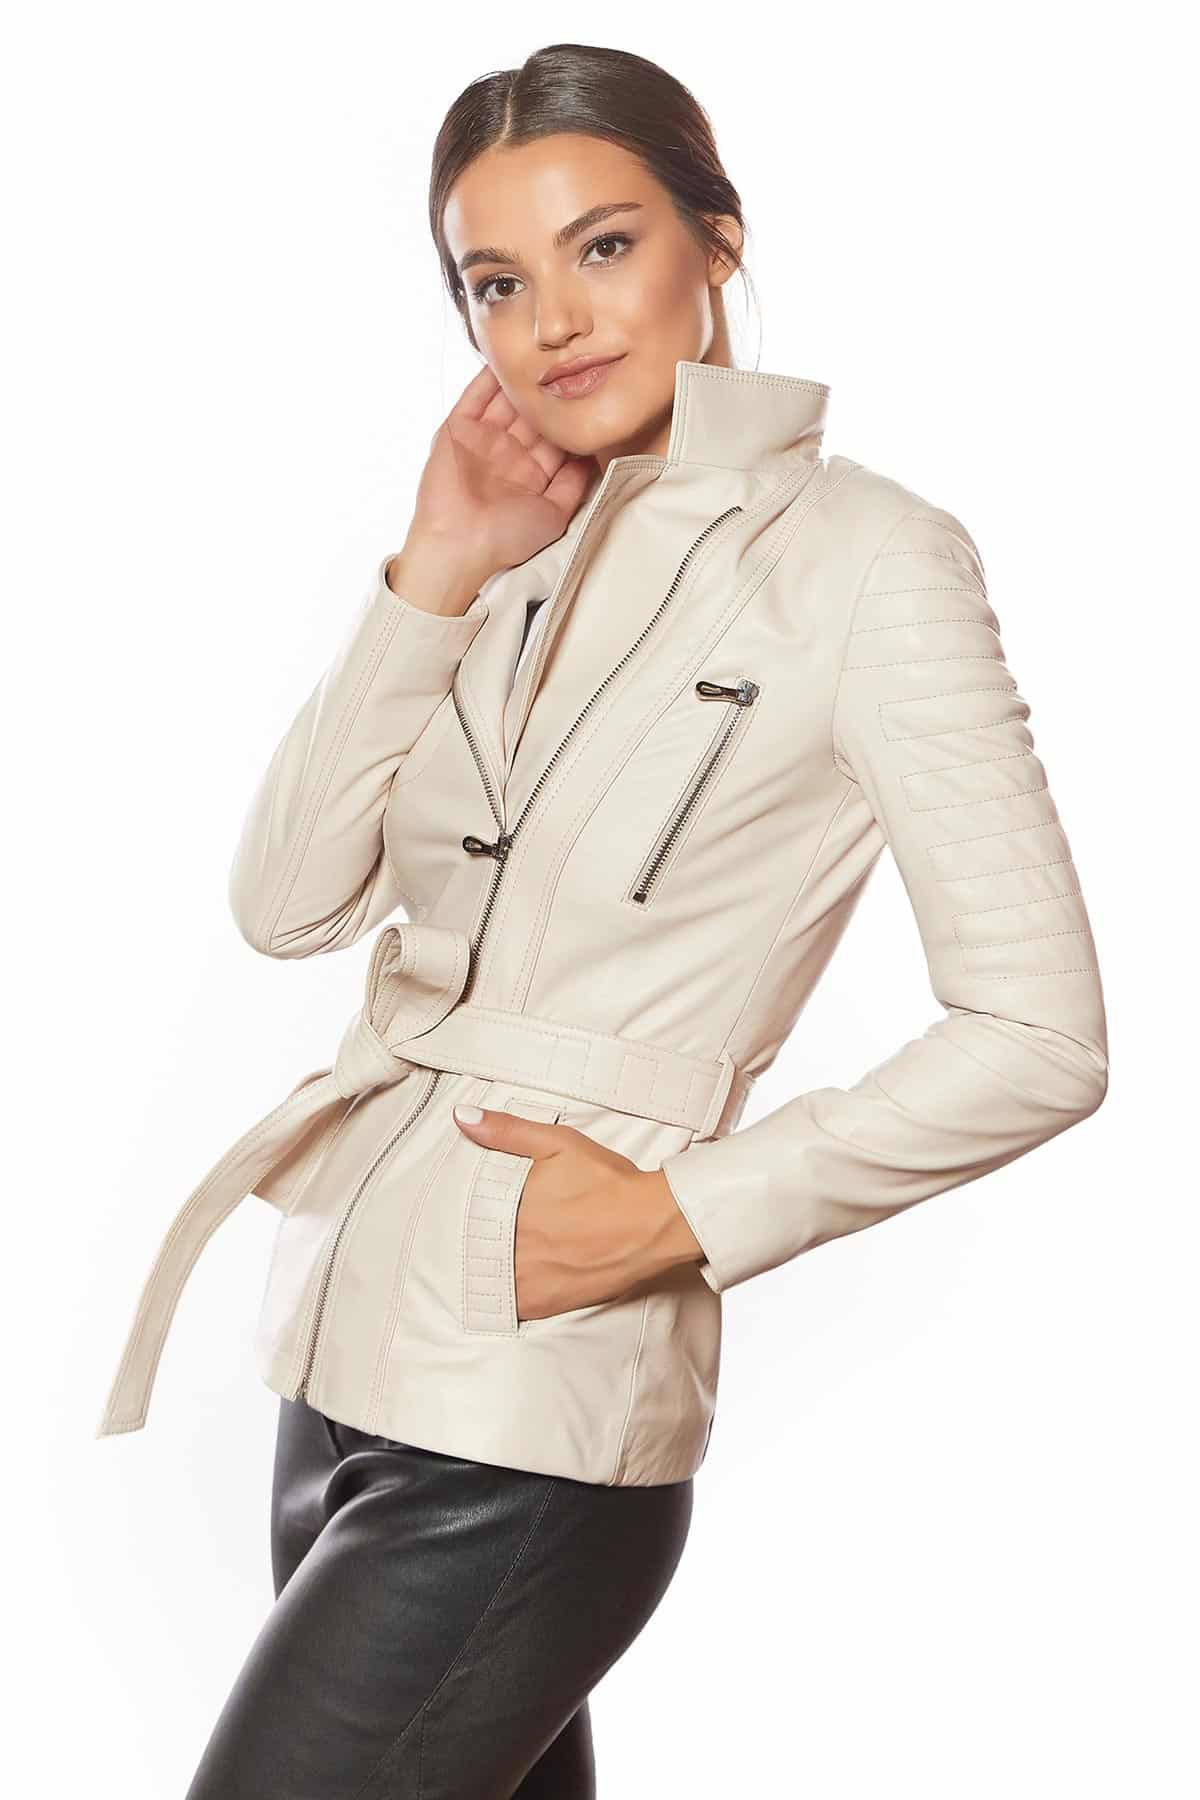 Urban Fashion Studio GIA Genuine Leather Jacket for Women Beige